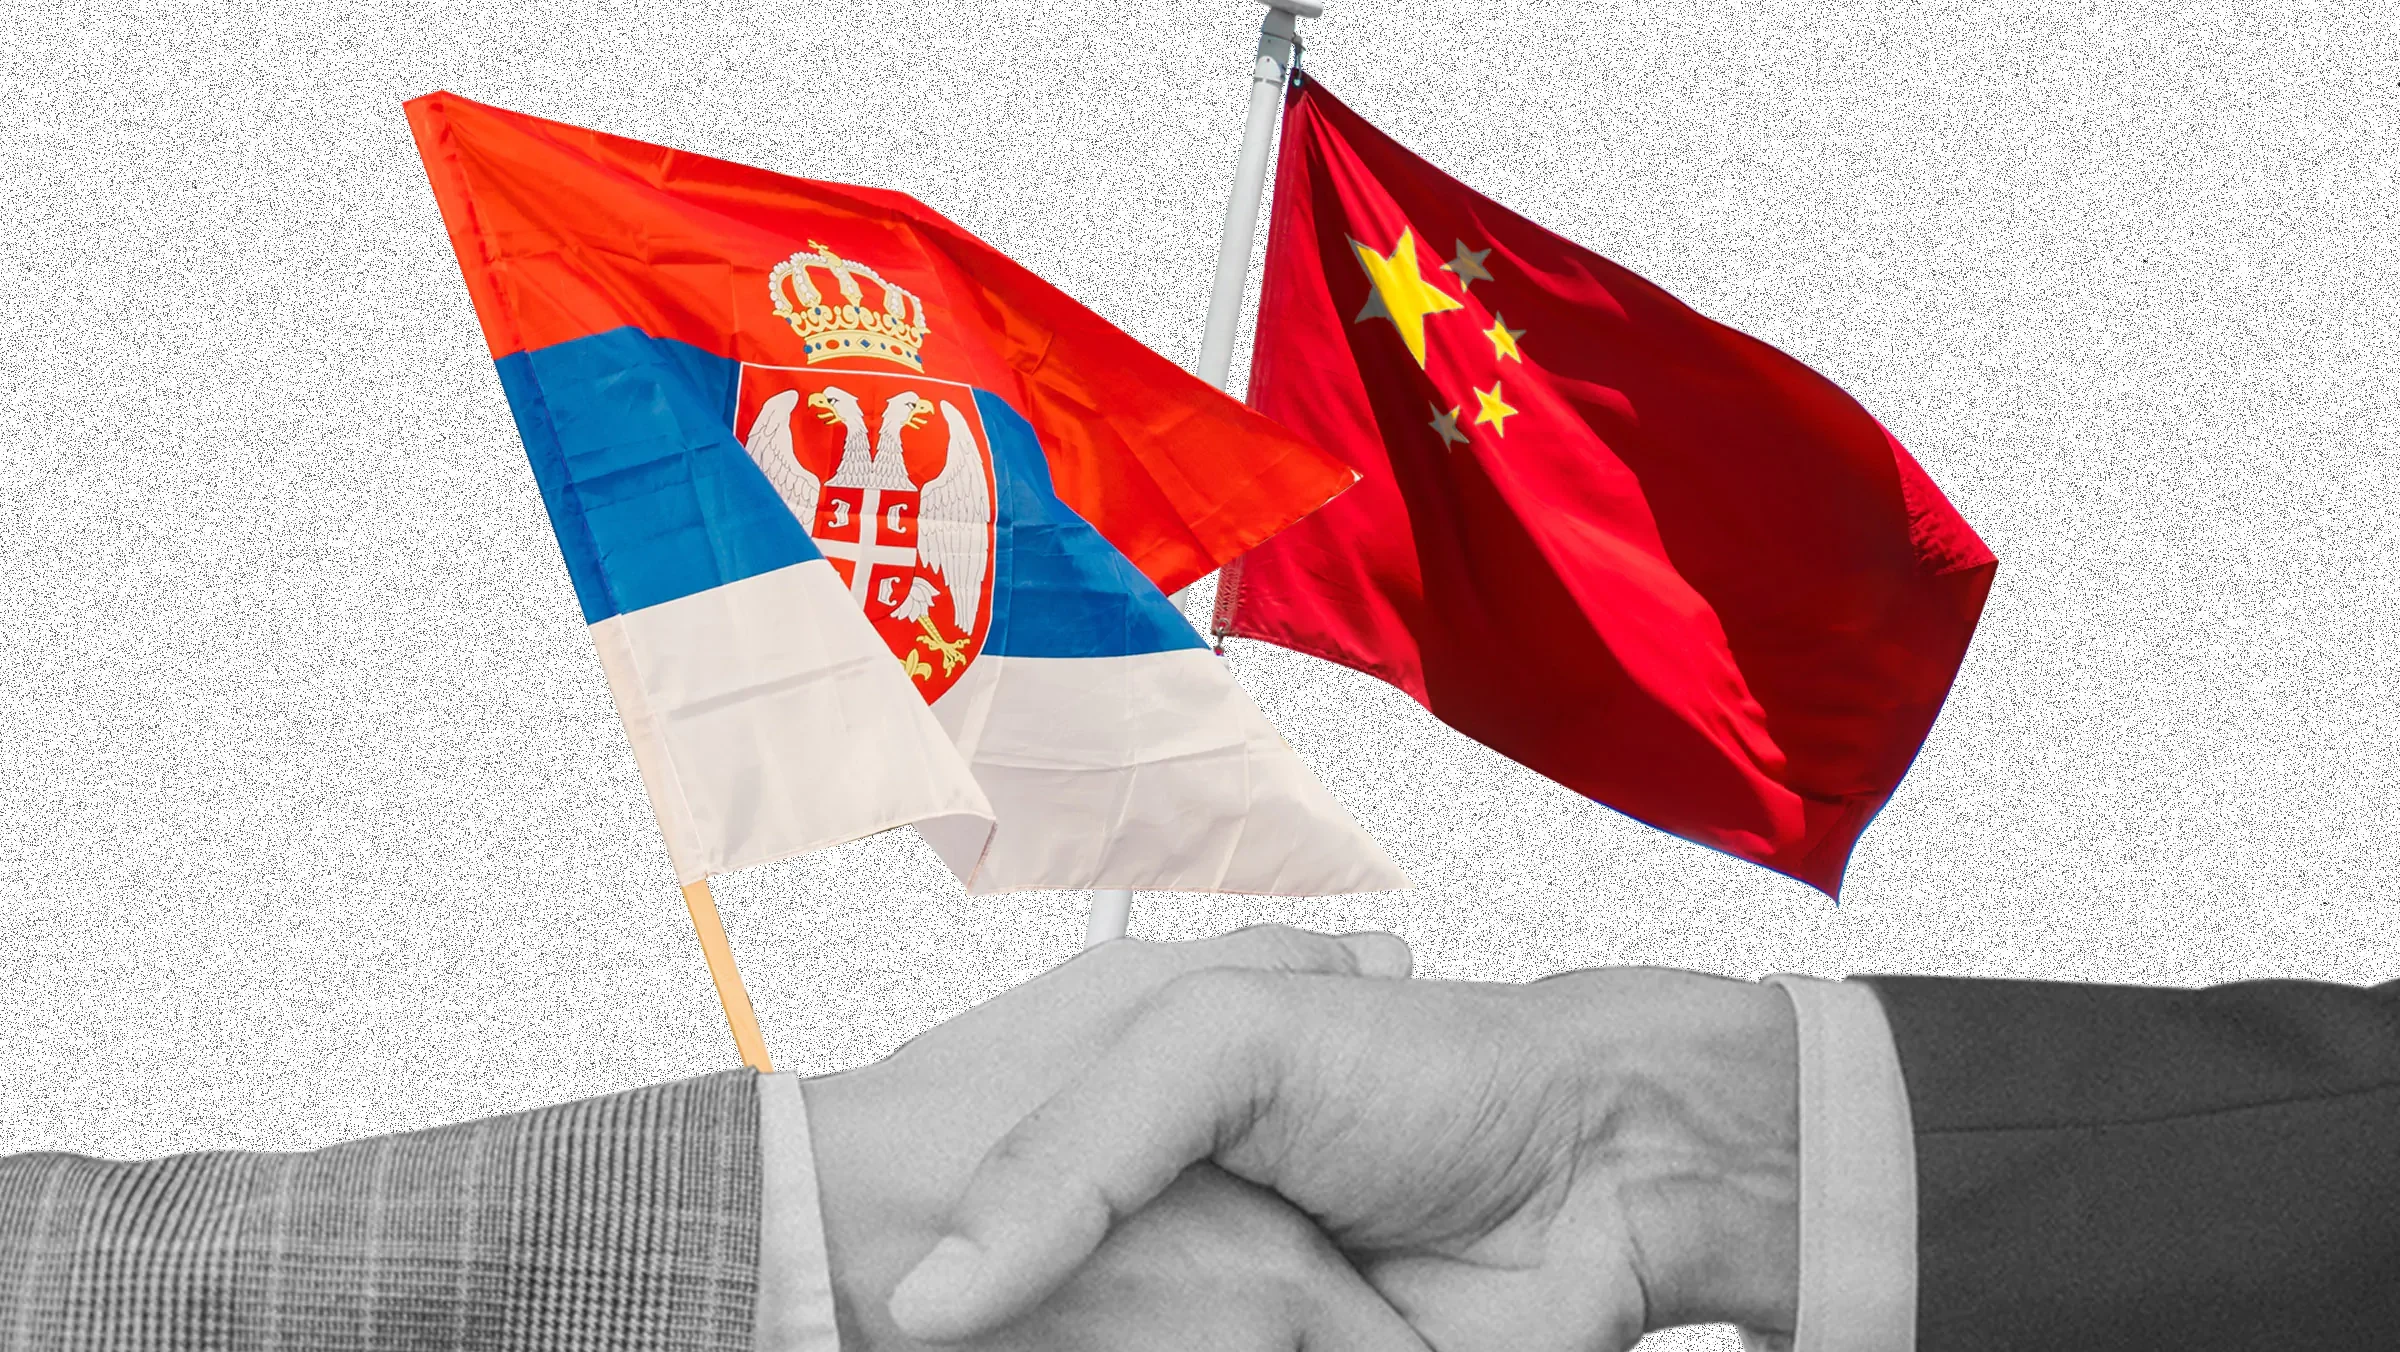 Nova era u odnosima: Šta za Srbiju znače ekonomski sporazumi sa Kinom